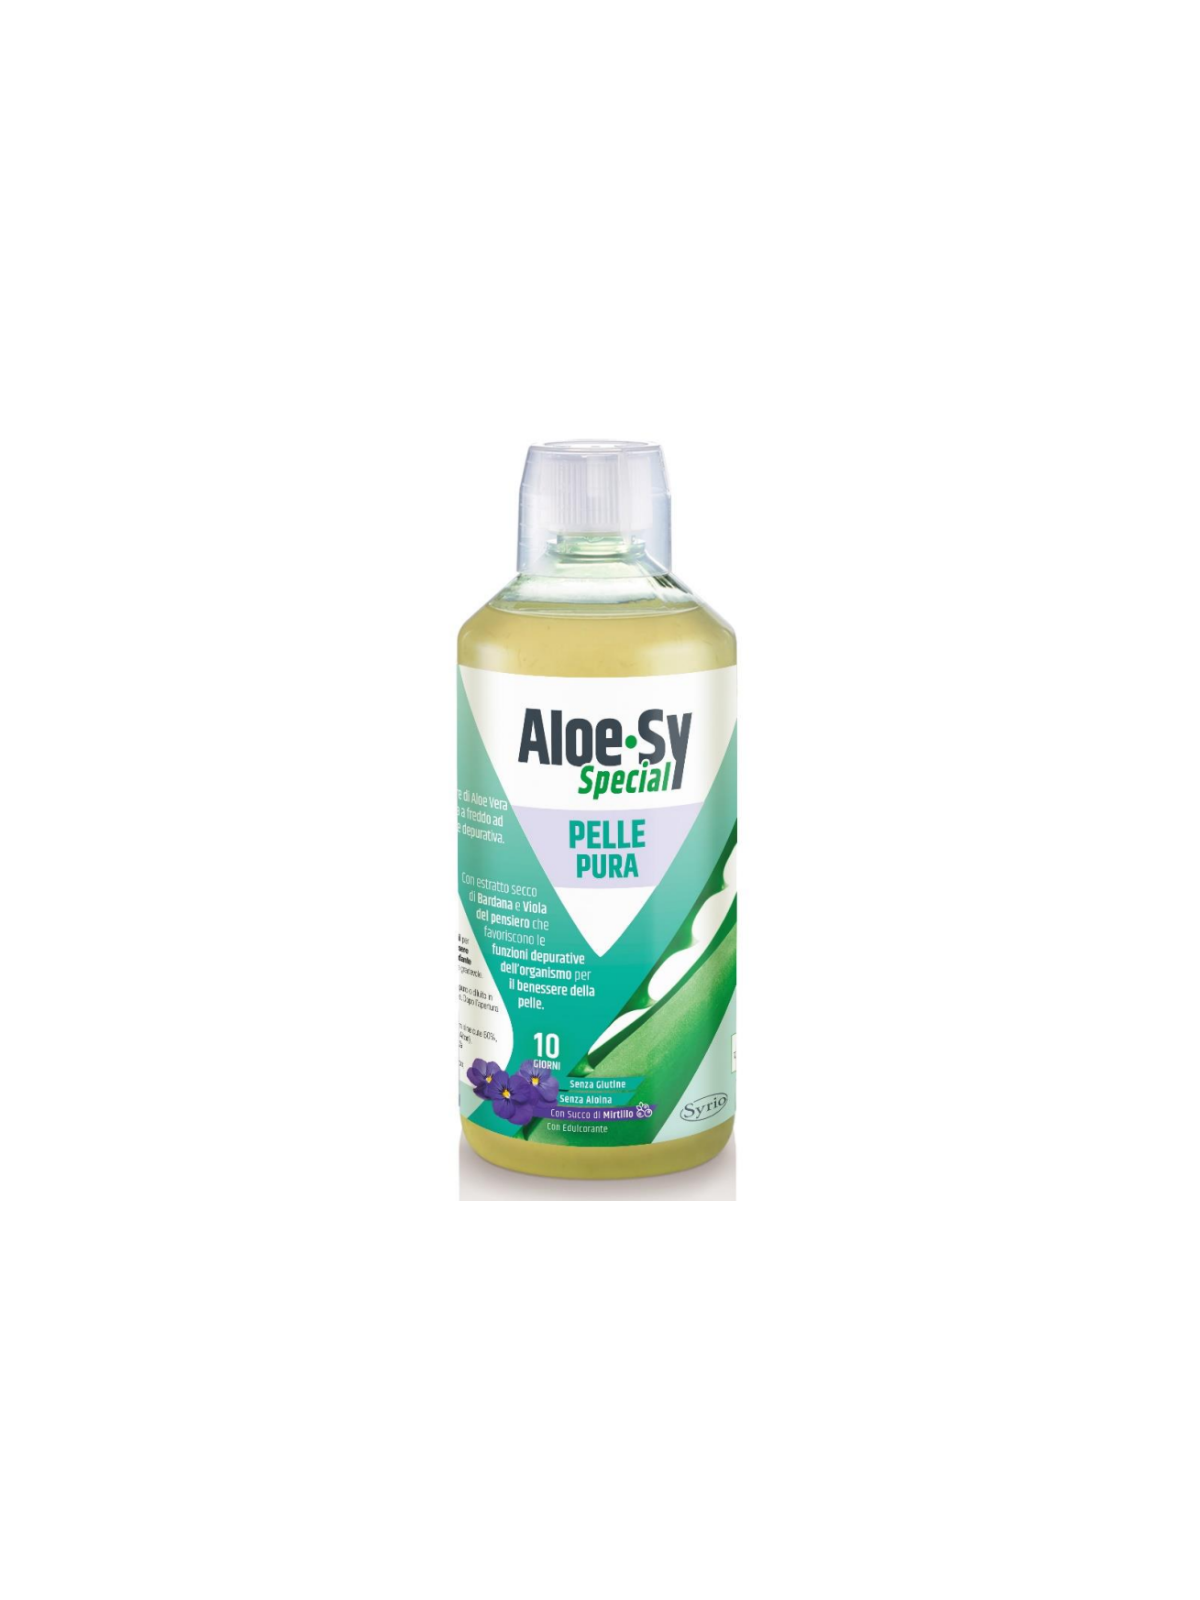 Aloe Sy Special Pelle Pura Syrio 500 ml